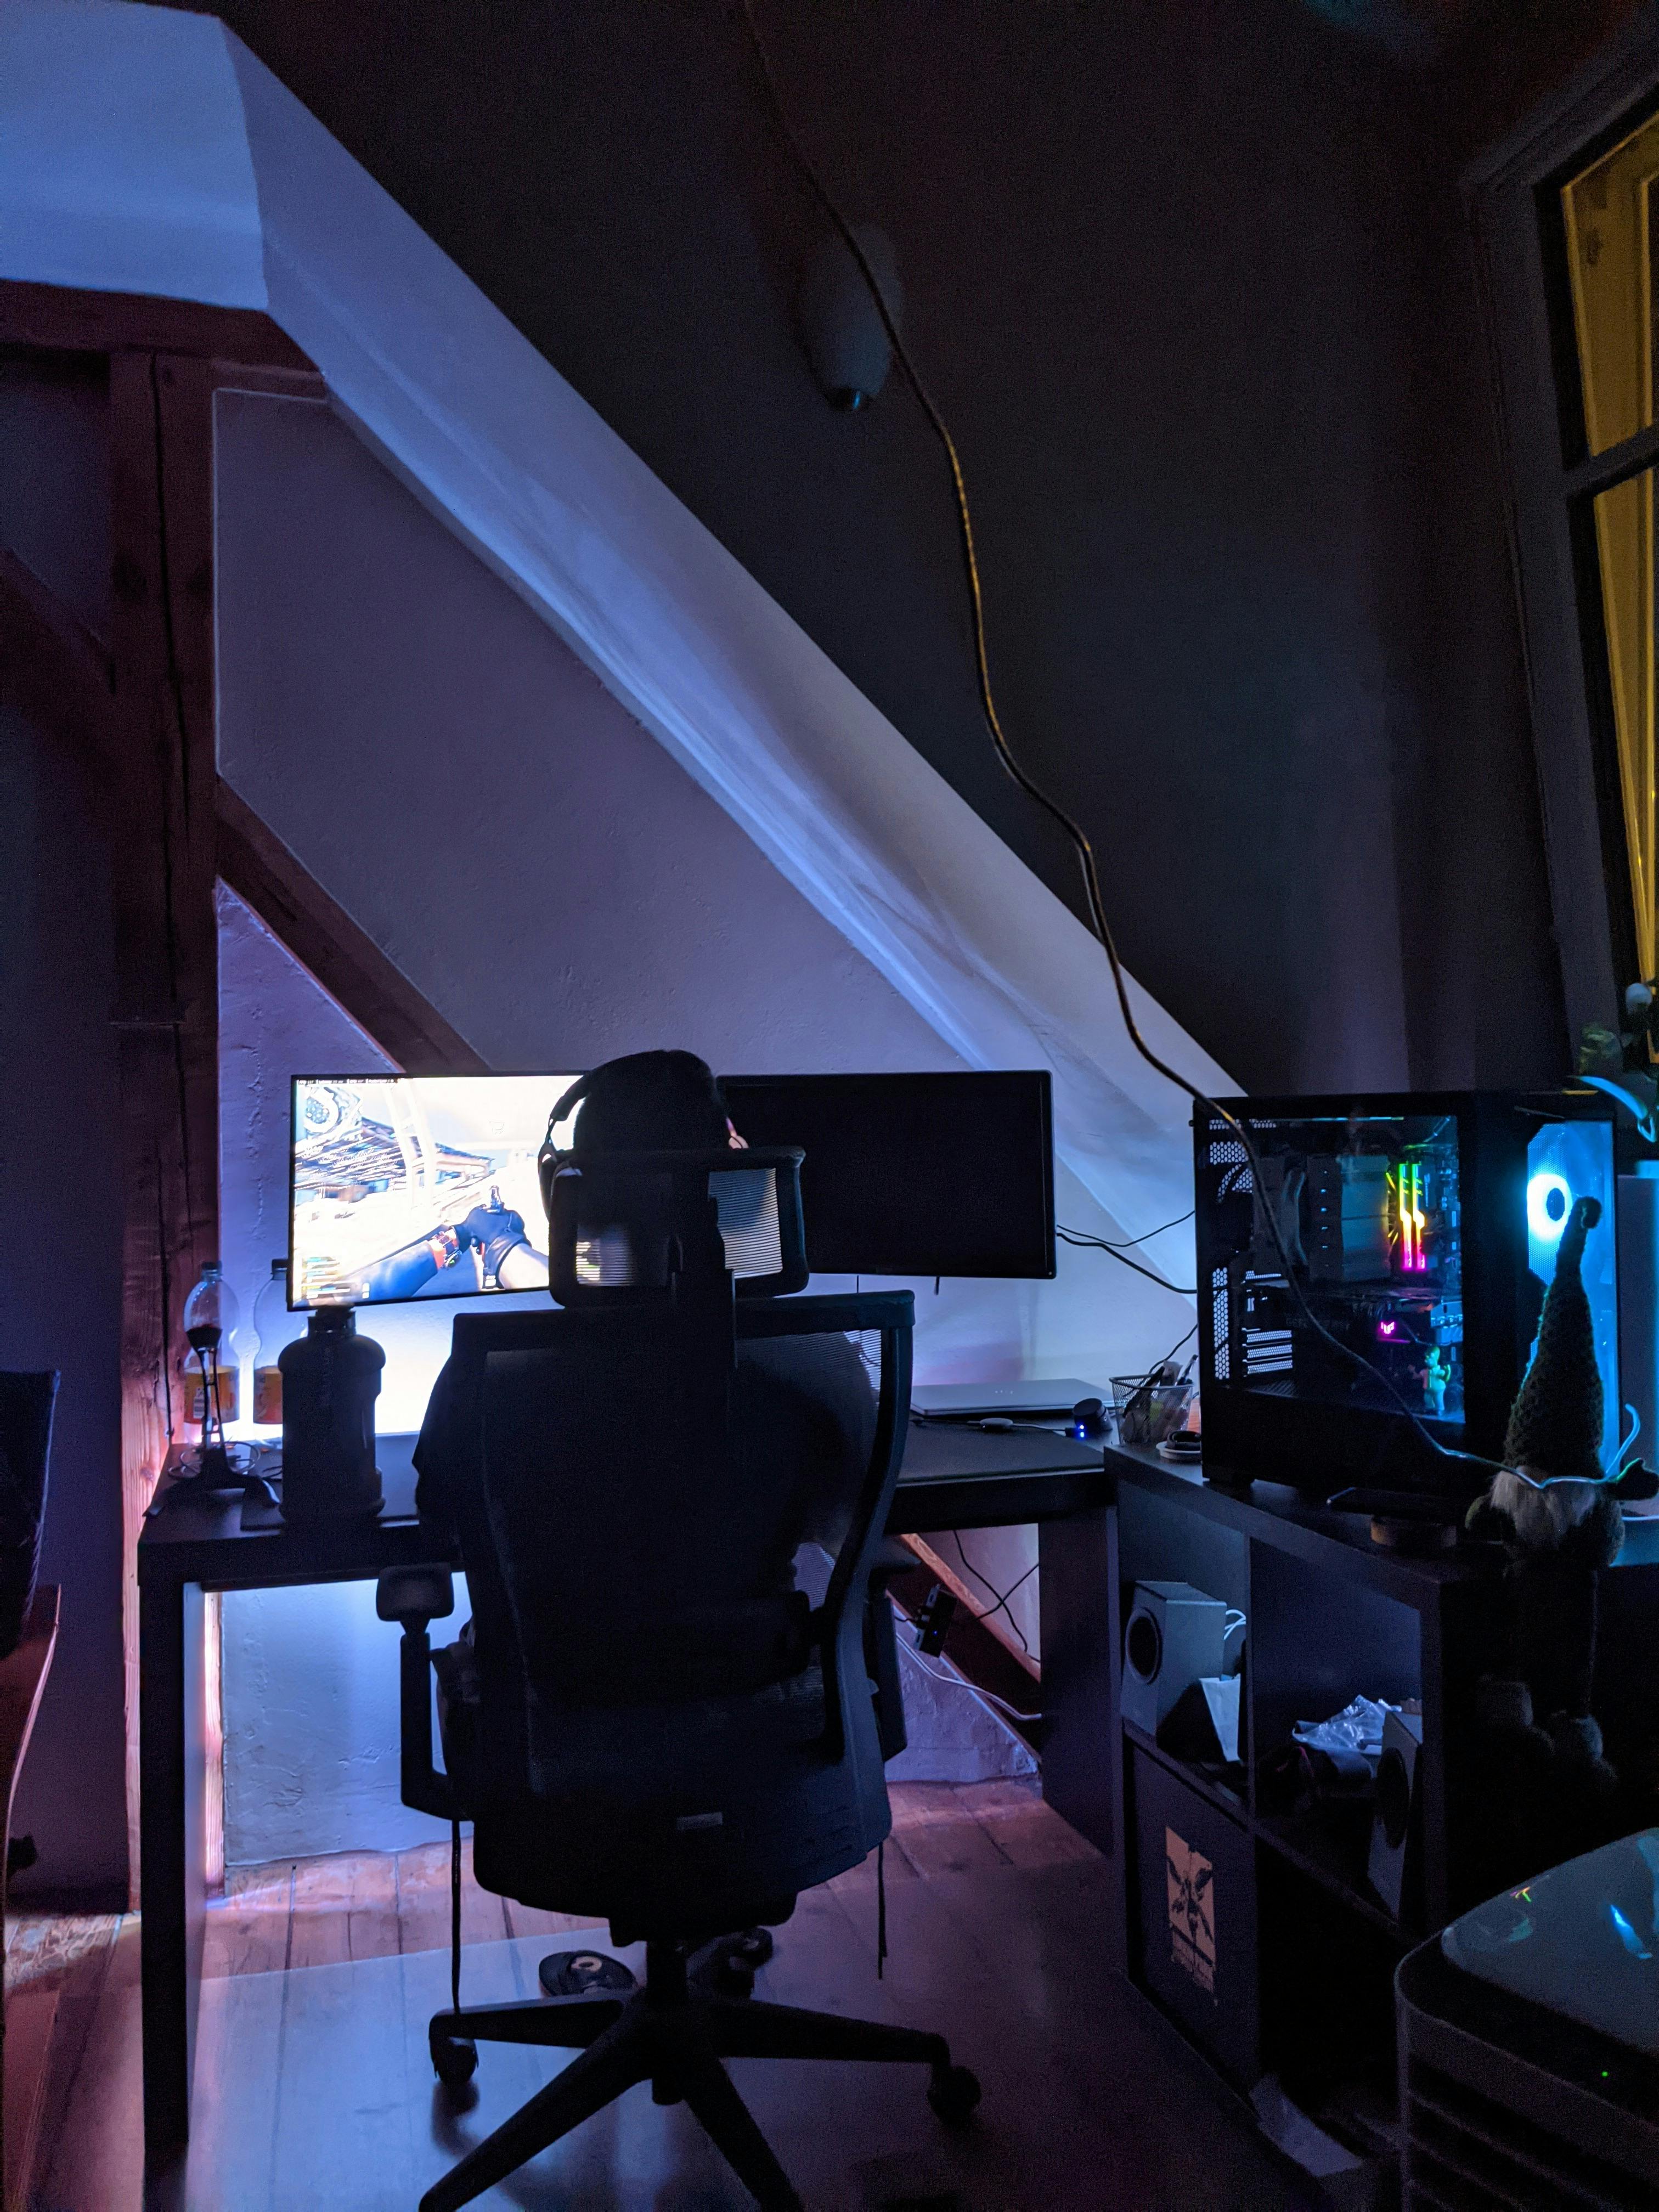 Pesona jugando a un videojuego en una sala de juegos | Foto: Pexels